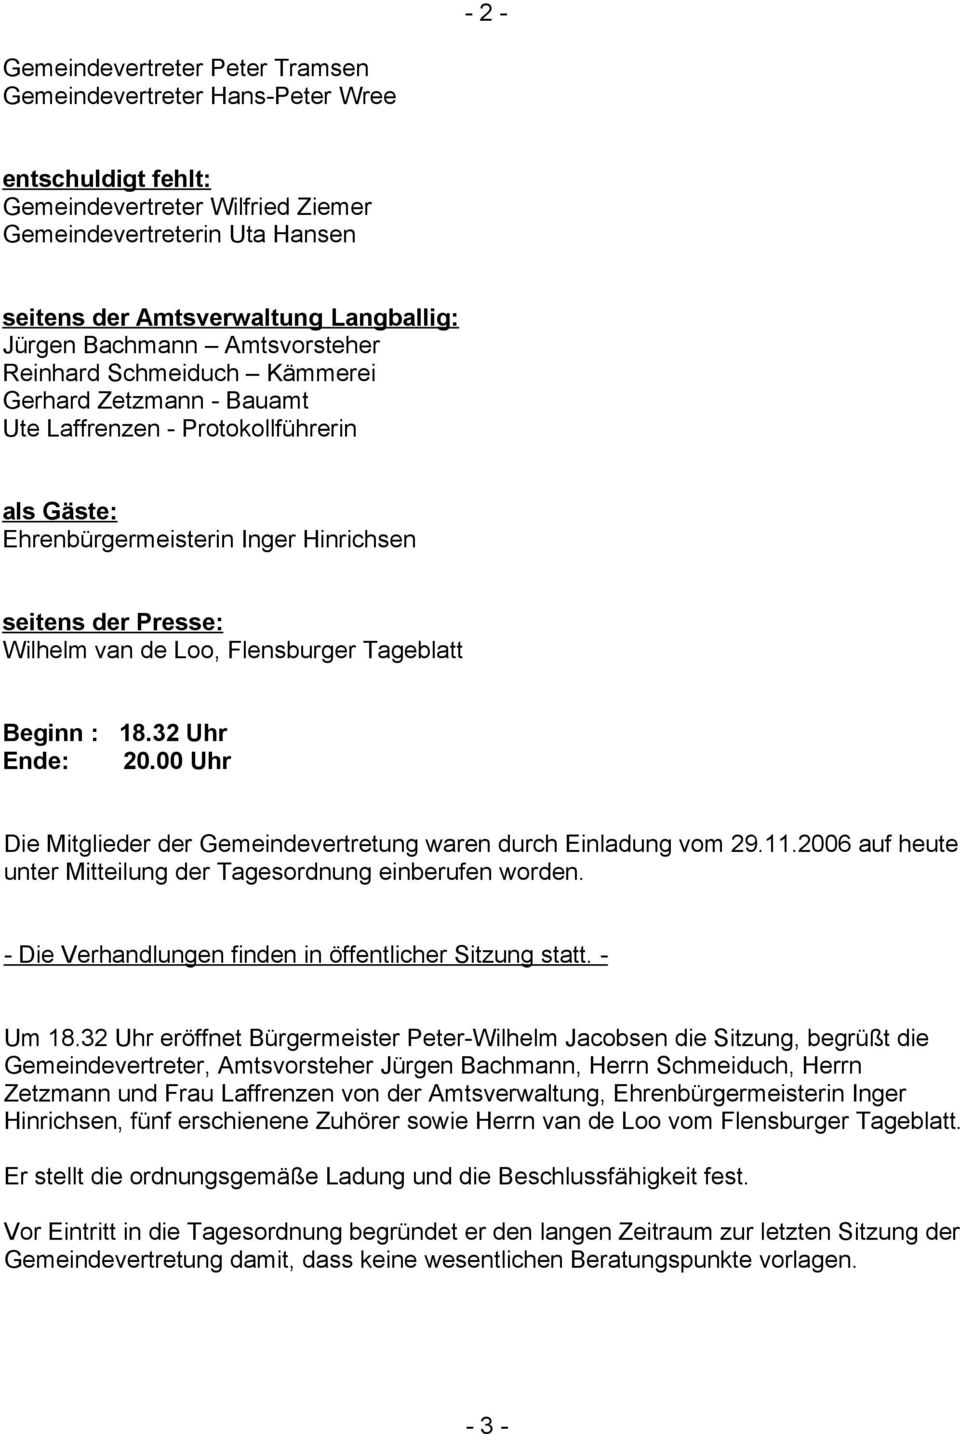 van de Loo, Flensburger Tageblatt Beginn : 18.32 Uhr Ende: 20.00 Uhr Die Mitglieder der Gemeindevertretung waren durch Einladung vom 29.11.